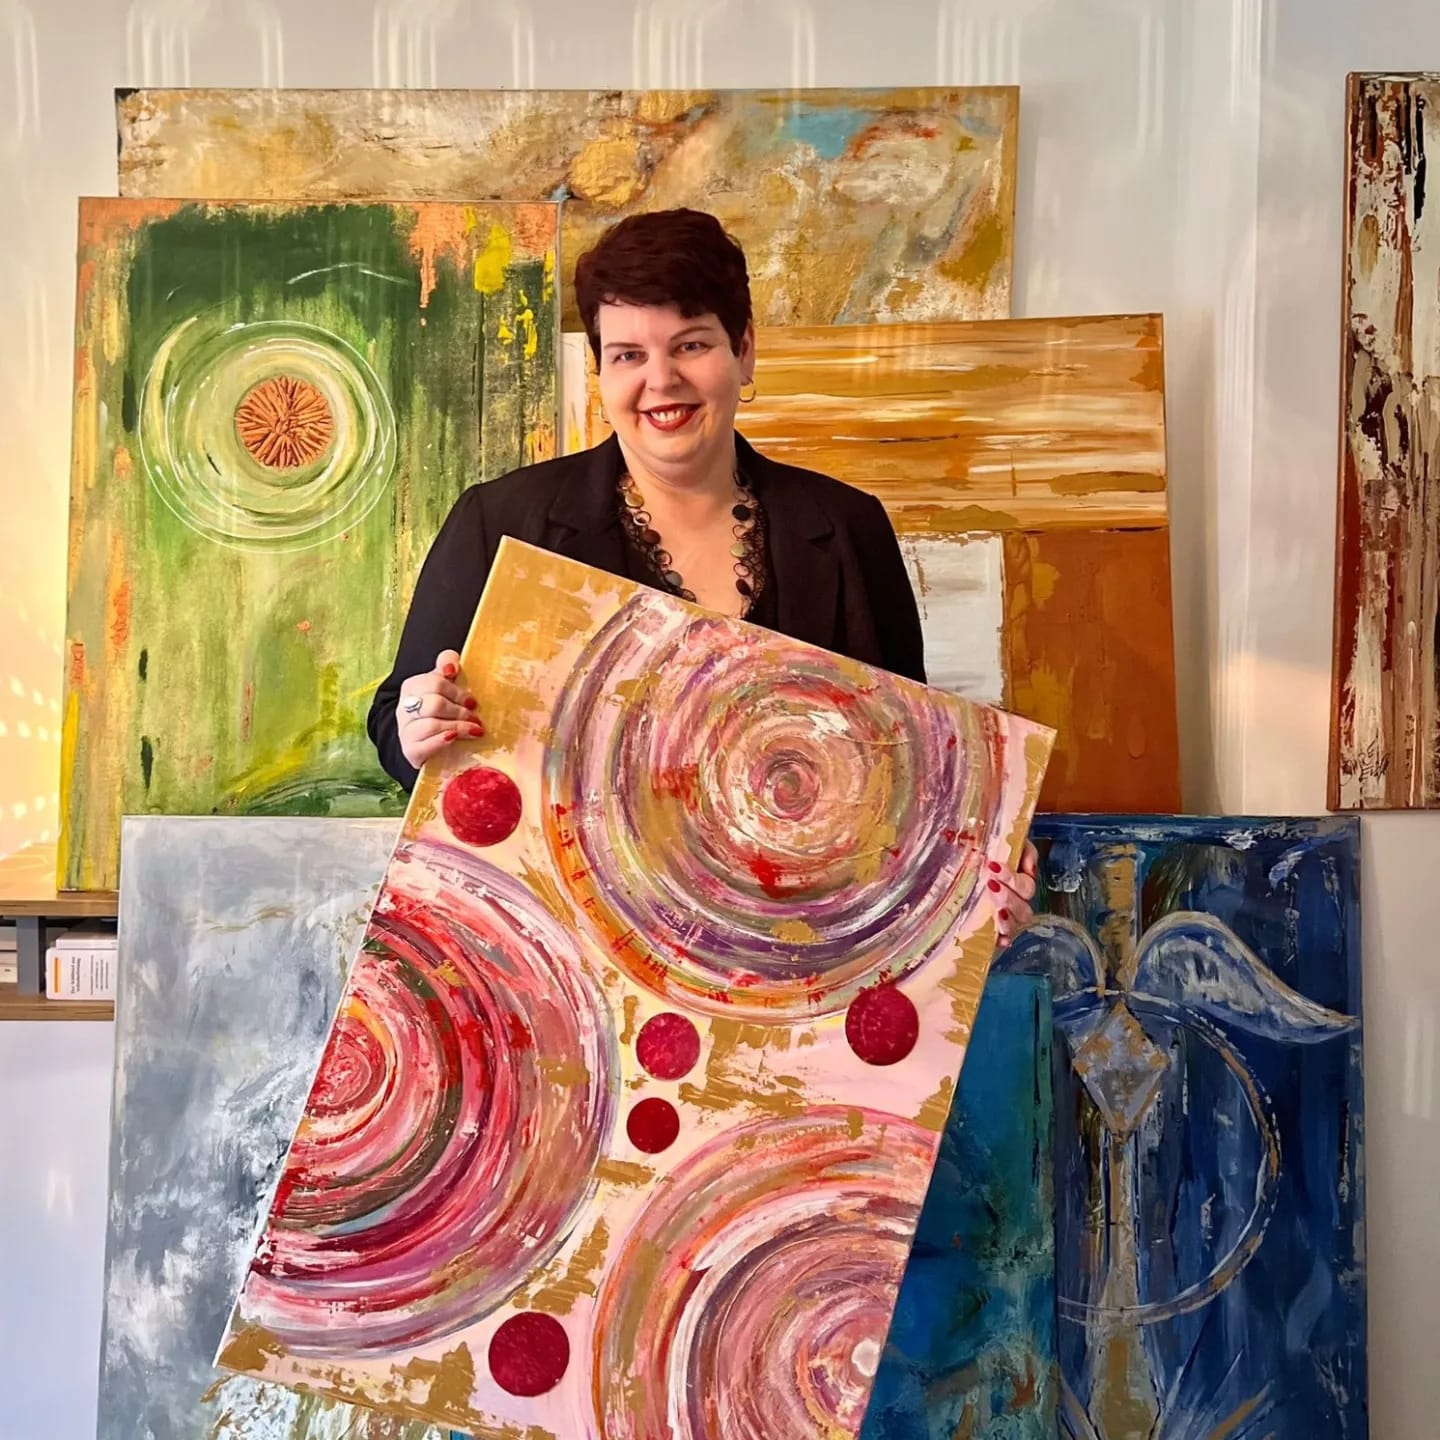 Künstlerin Eva Maria Shire aus Regensburg. Acryl Malerei, Intuition trifft Farben. Gemälde in verschiedenen Größen & Formaten.